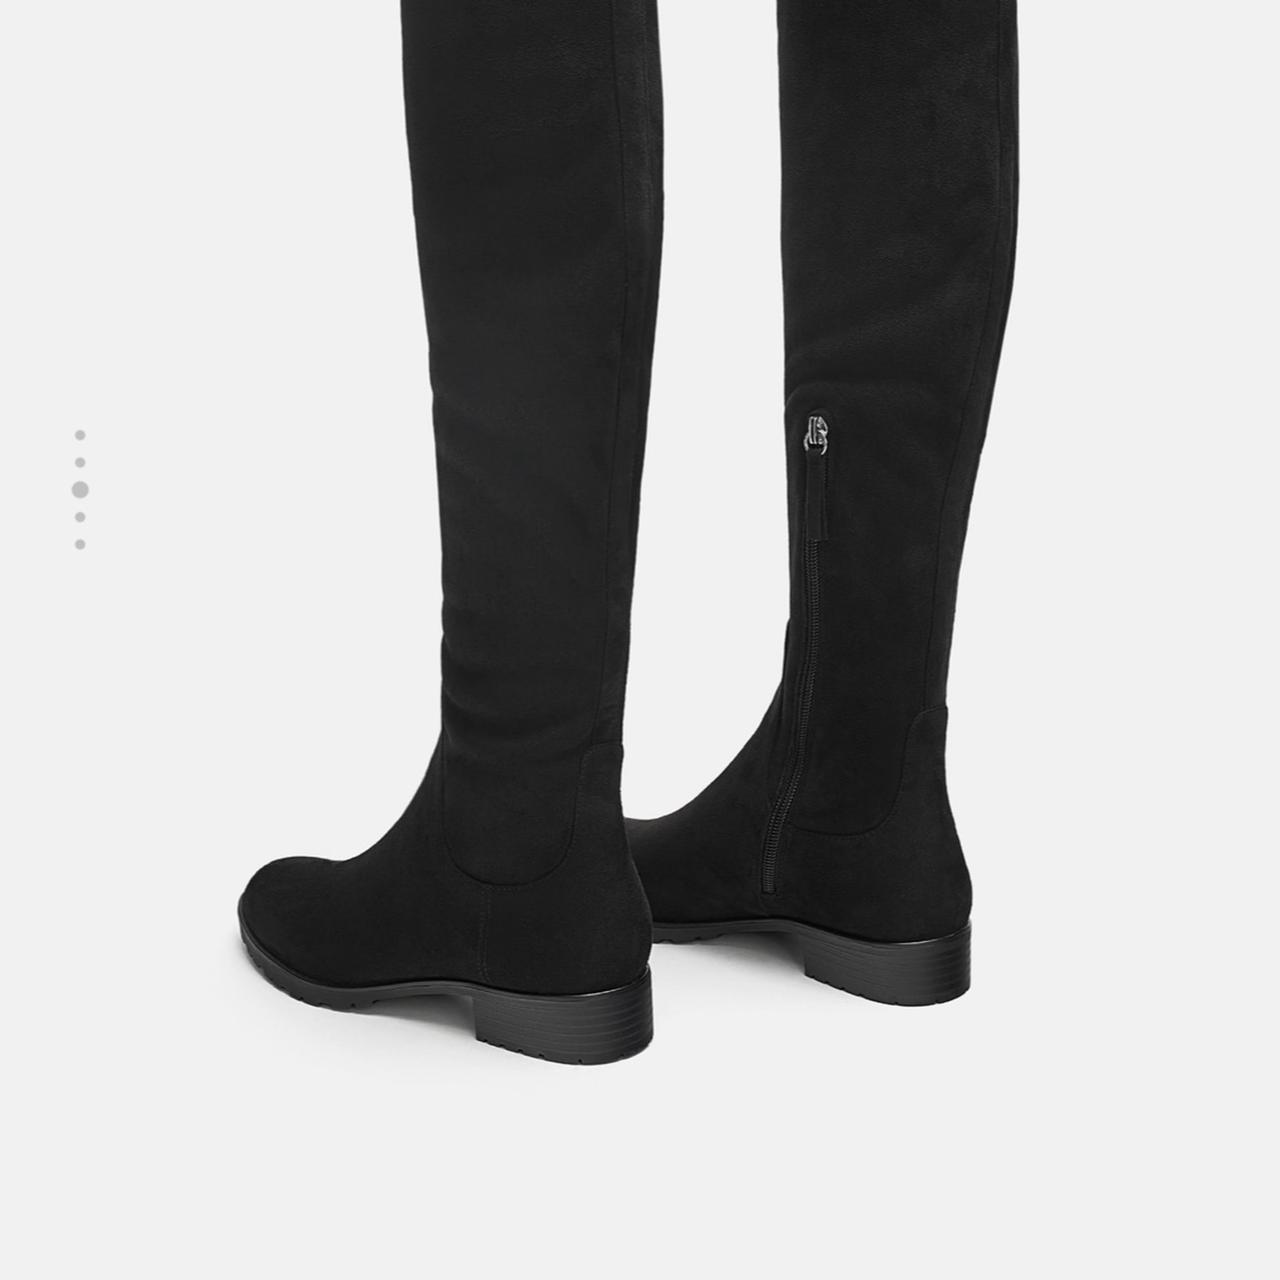 Zara Women's Boots | Depop